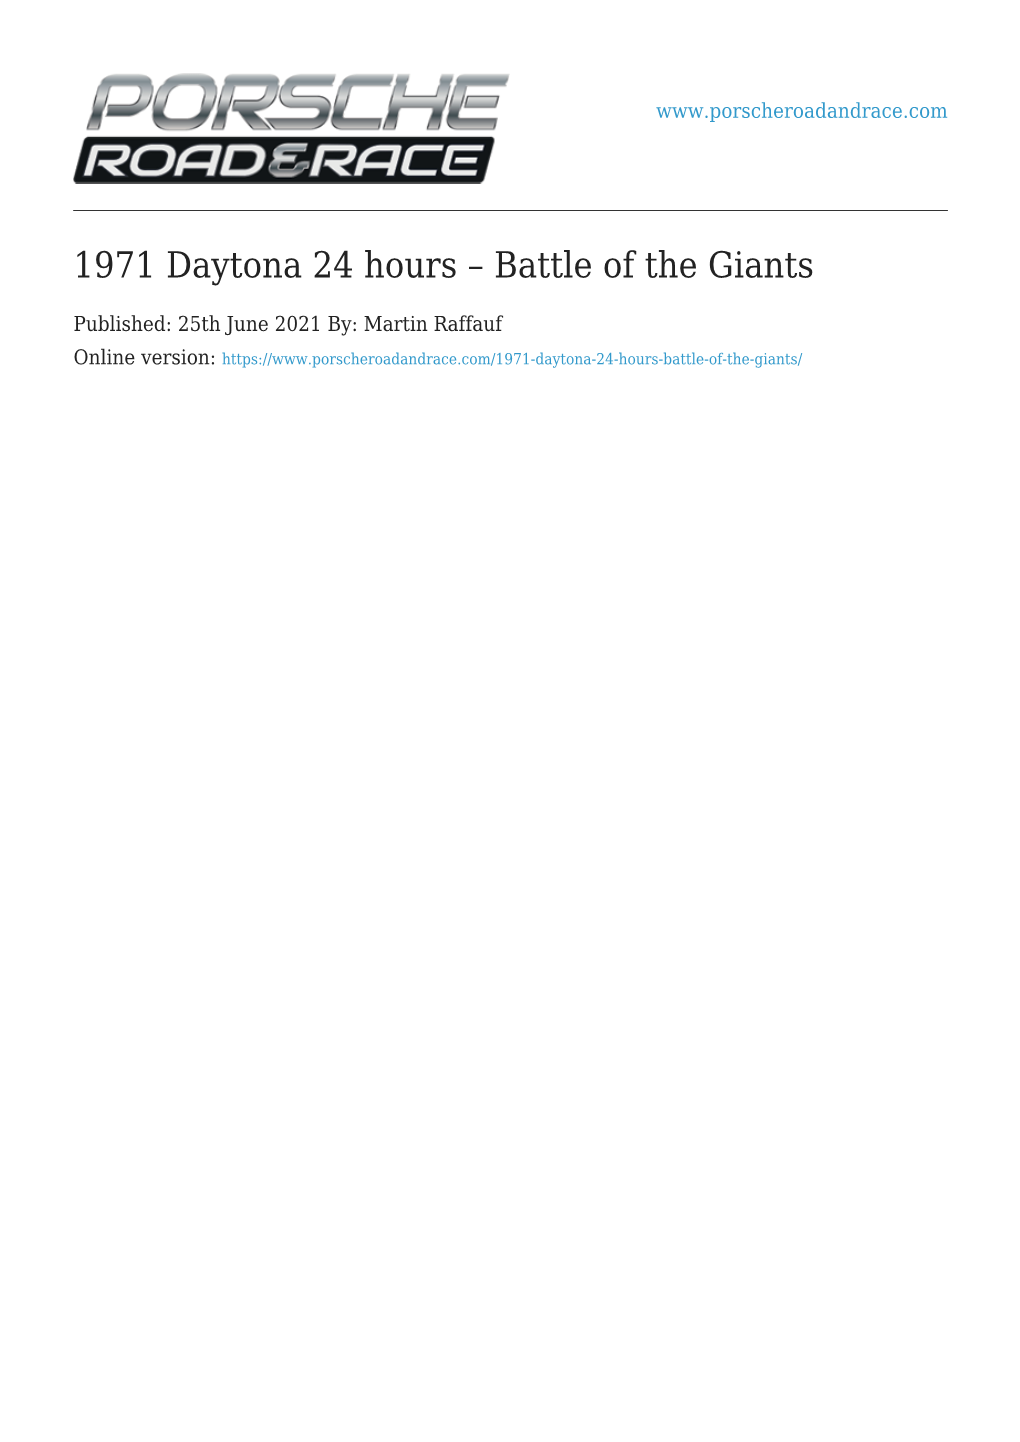 1971 Daytona 24 Hours – Battle of the Giants